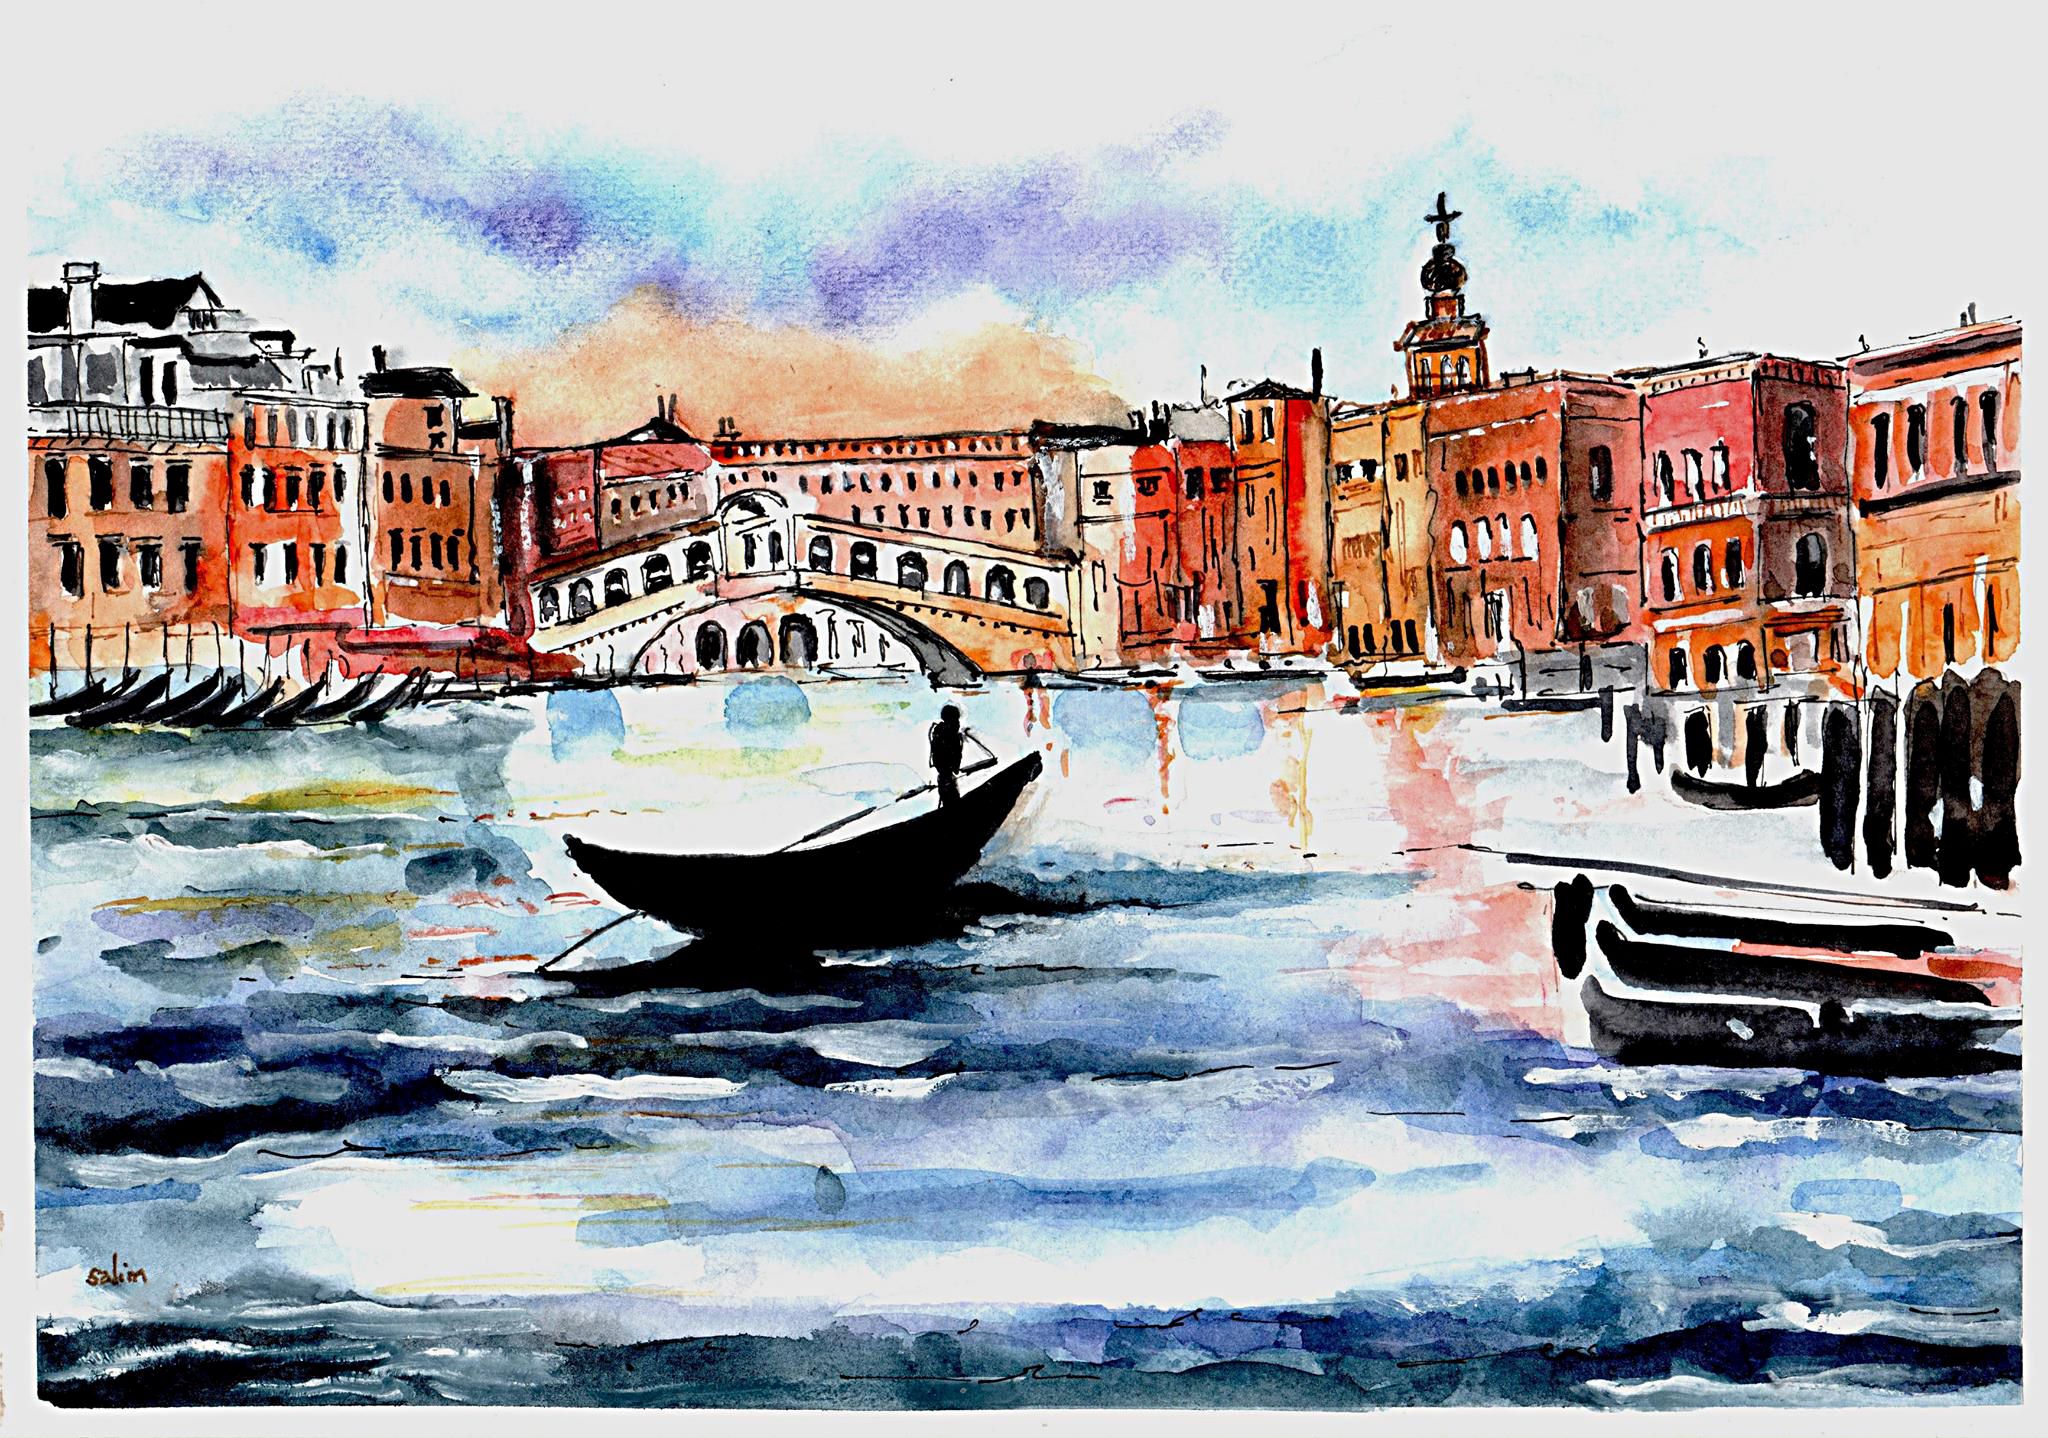 'Postcard from Venice' by Salim Quraishy, Harrow u3a